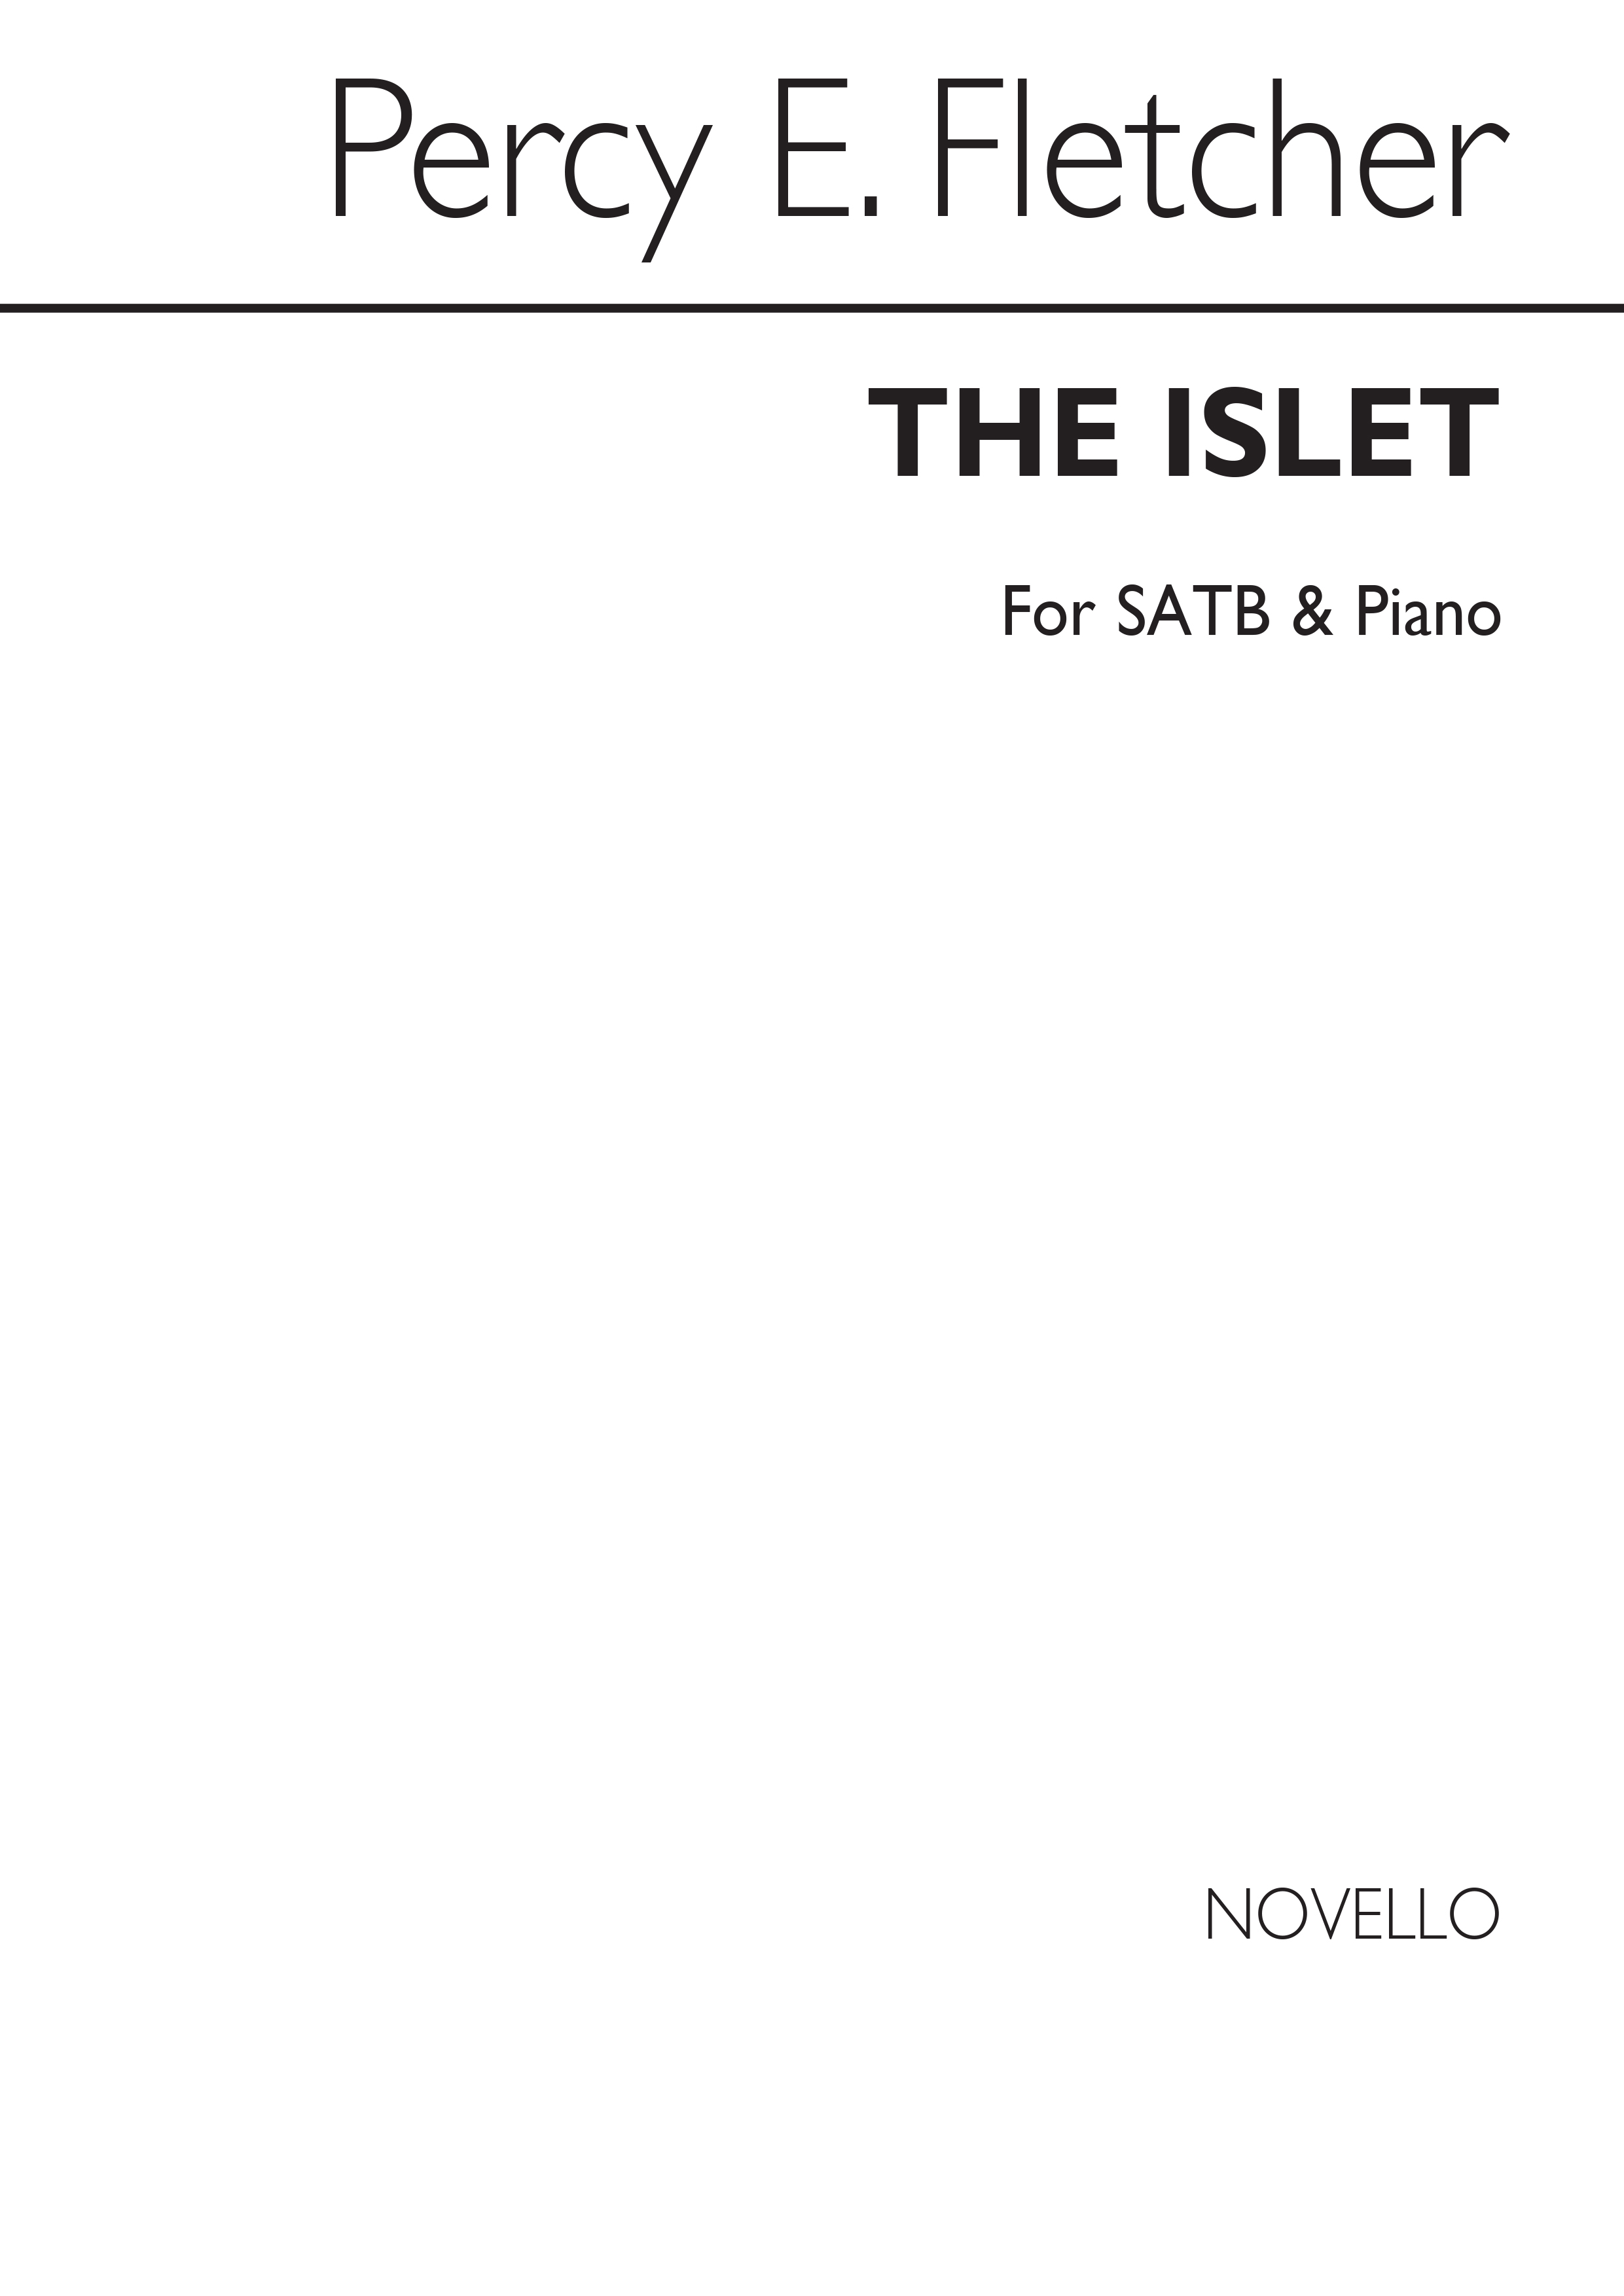 Percy E. Fletcher: The Islet Satb/Piano